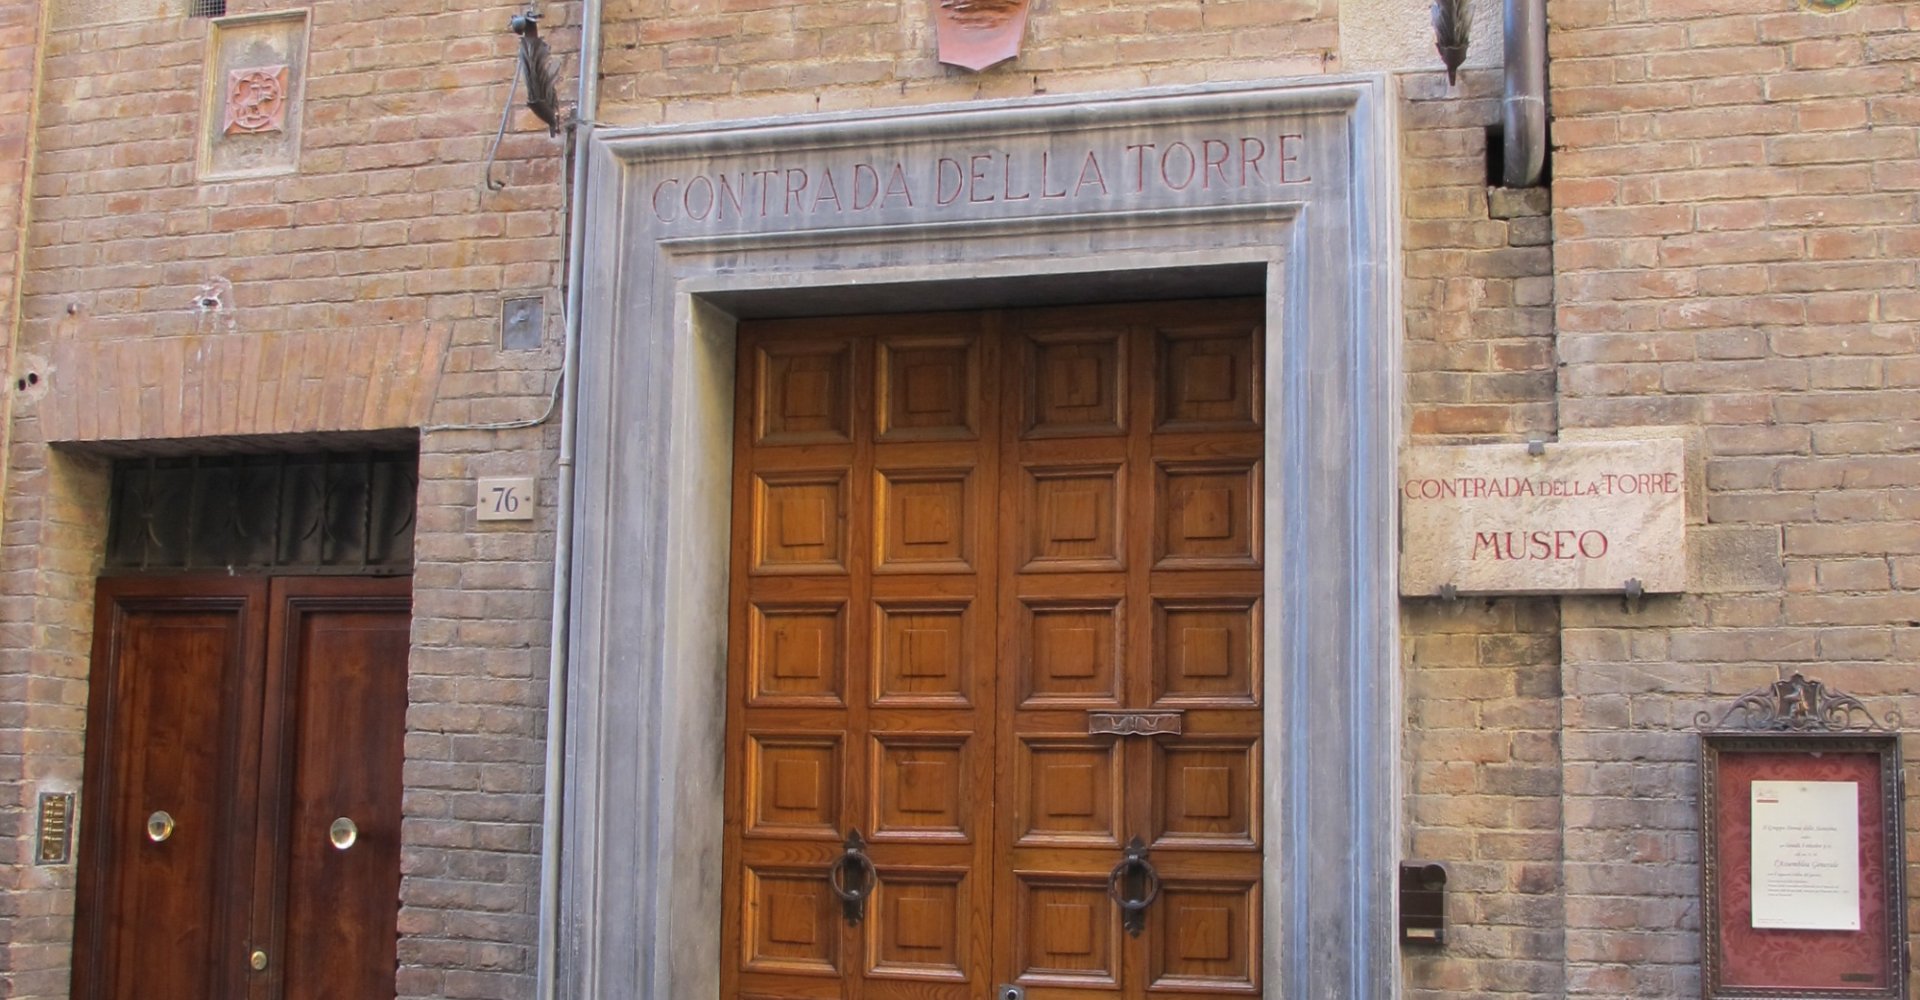 Das Museum der Contrada della Torre in Siena